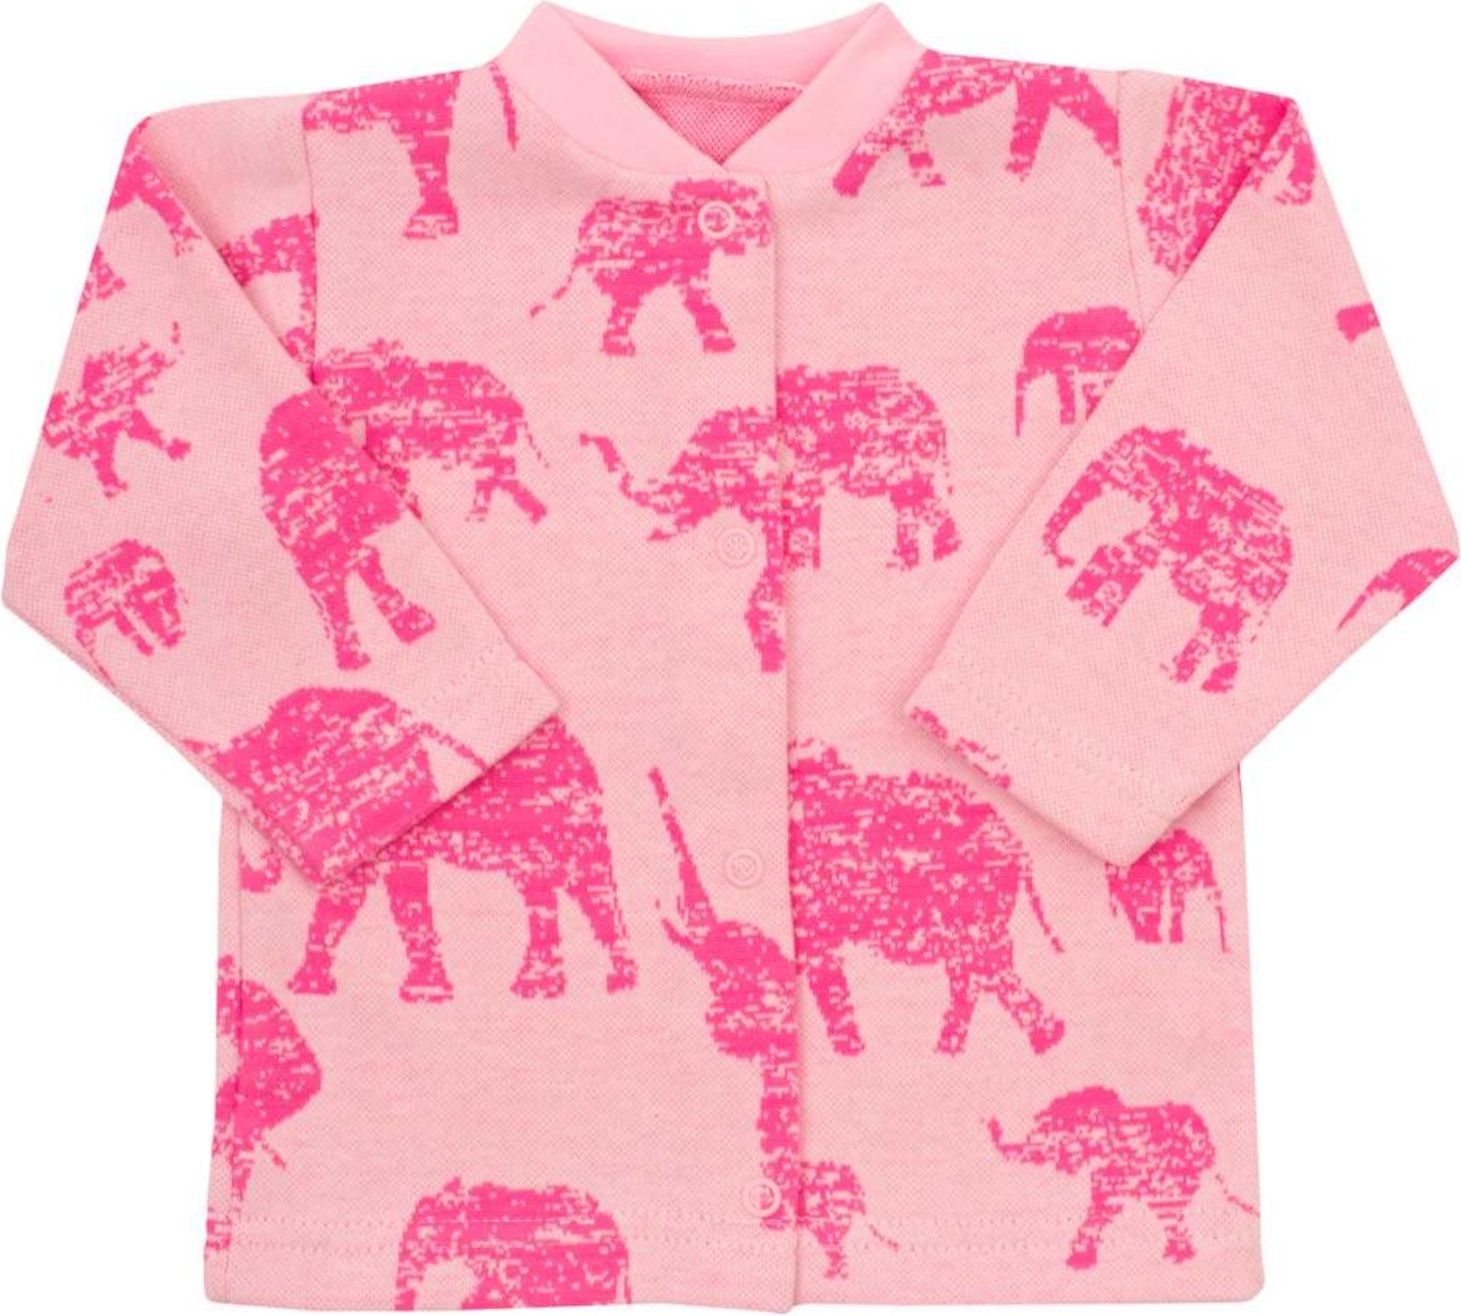 Kojenecký kabátek Baby Service Sloni růžový - Kojenecký kabátek Baby Service Sloni růžový - obrázek 1